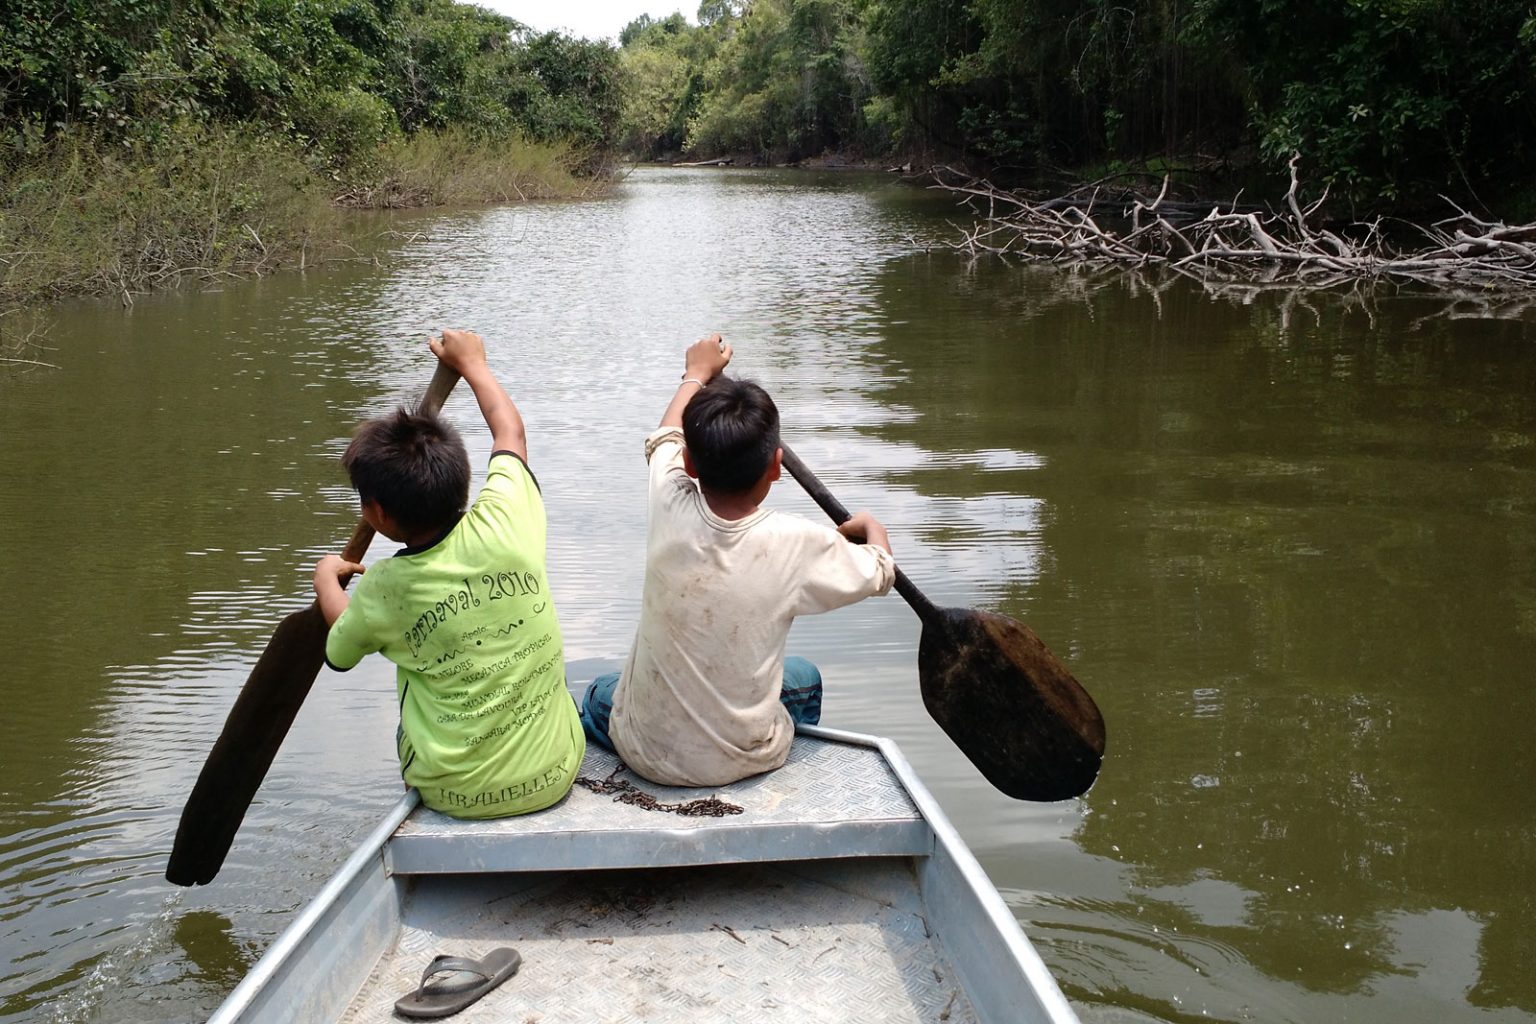 PT no Senado reverencia Amazônia com defesa da floresta e dos povos indígenas